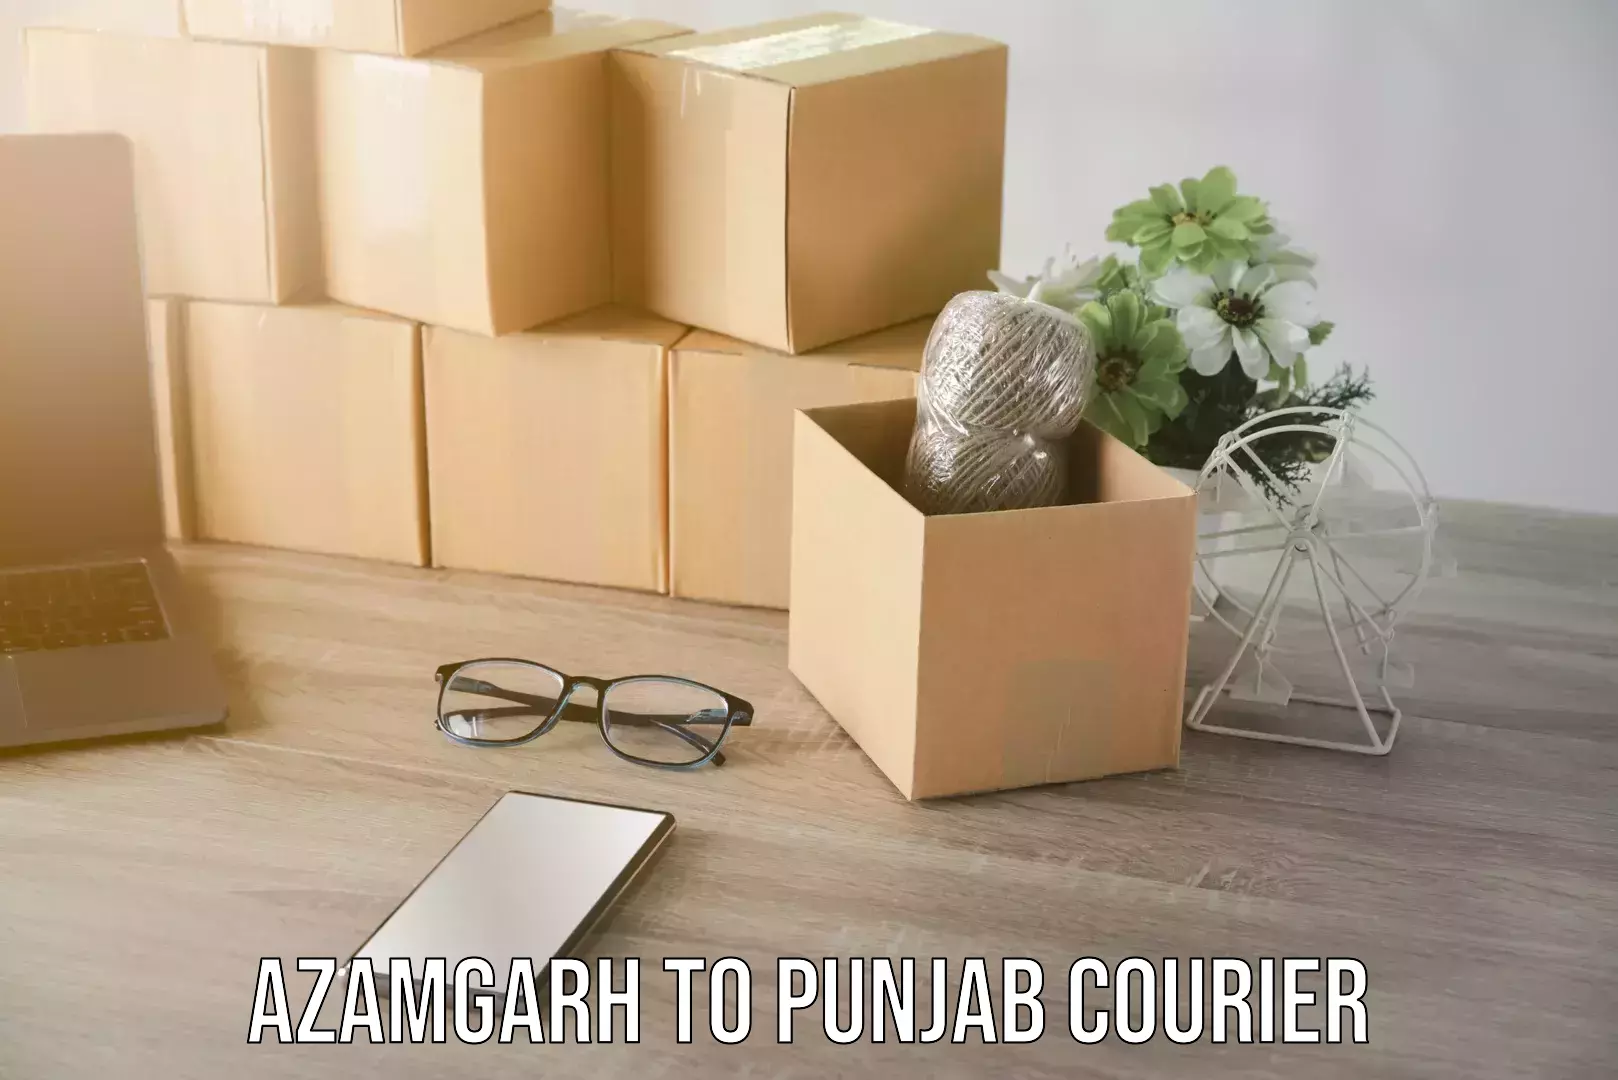 Advanced shipping technology Azamgarh to Punjab